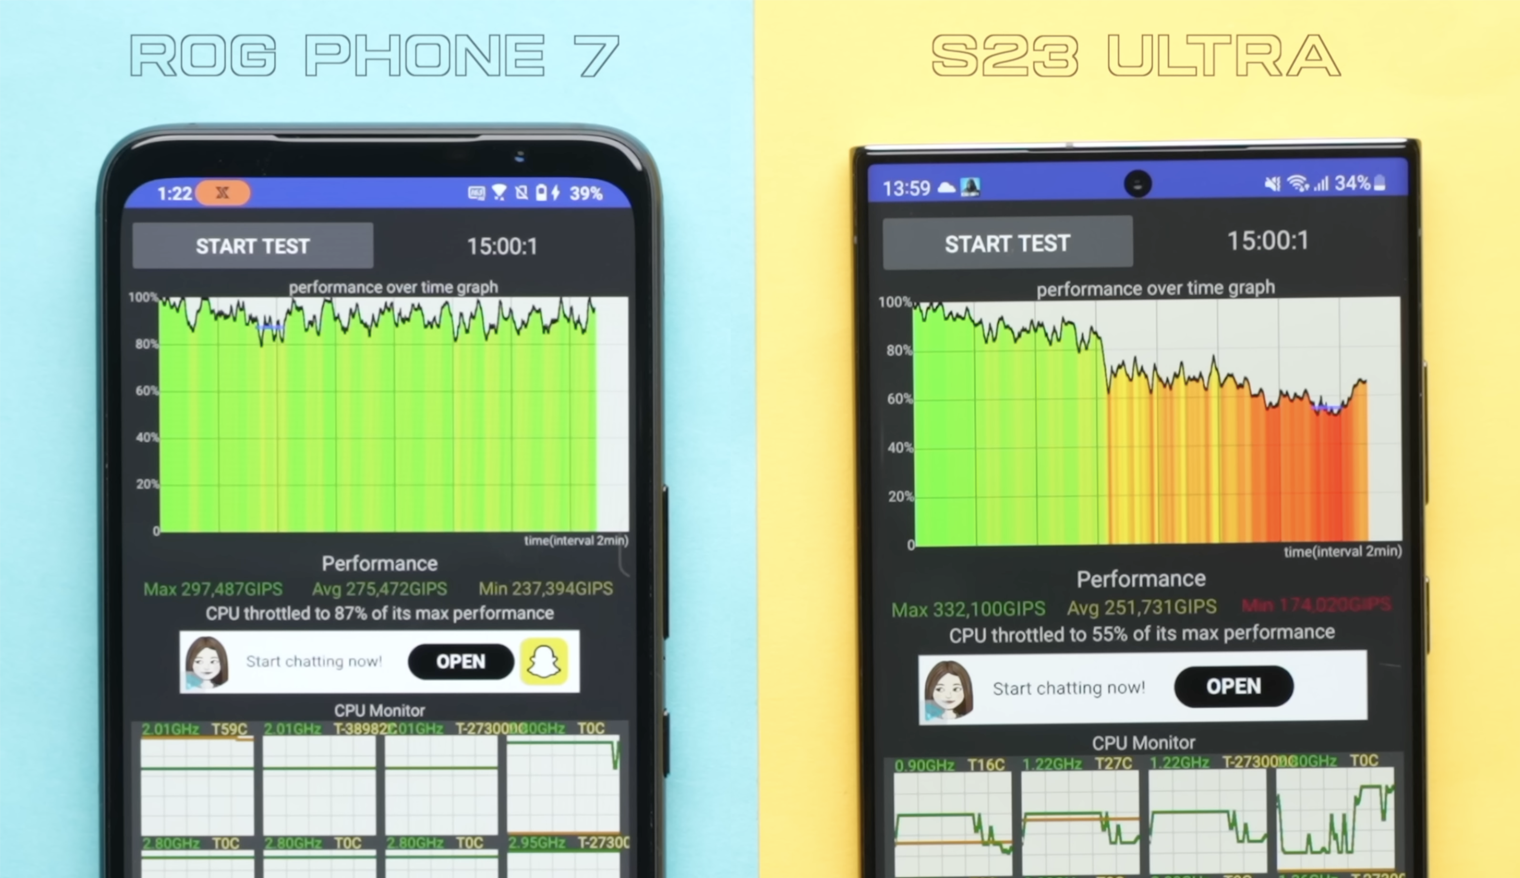 Asus ROG Phone 7 (слева) хорошо охлаждается и может долго работать на максимальной частоте. А вот Samsung Galaxy S23 Ultra постепенно теряет производительность по мере перегрева. Источник: ютуб-канал Beebom